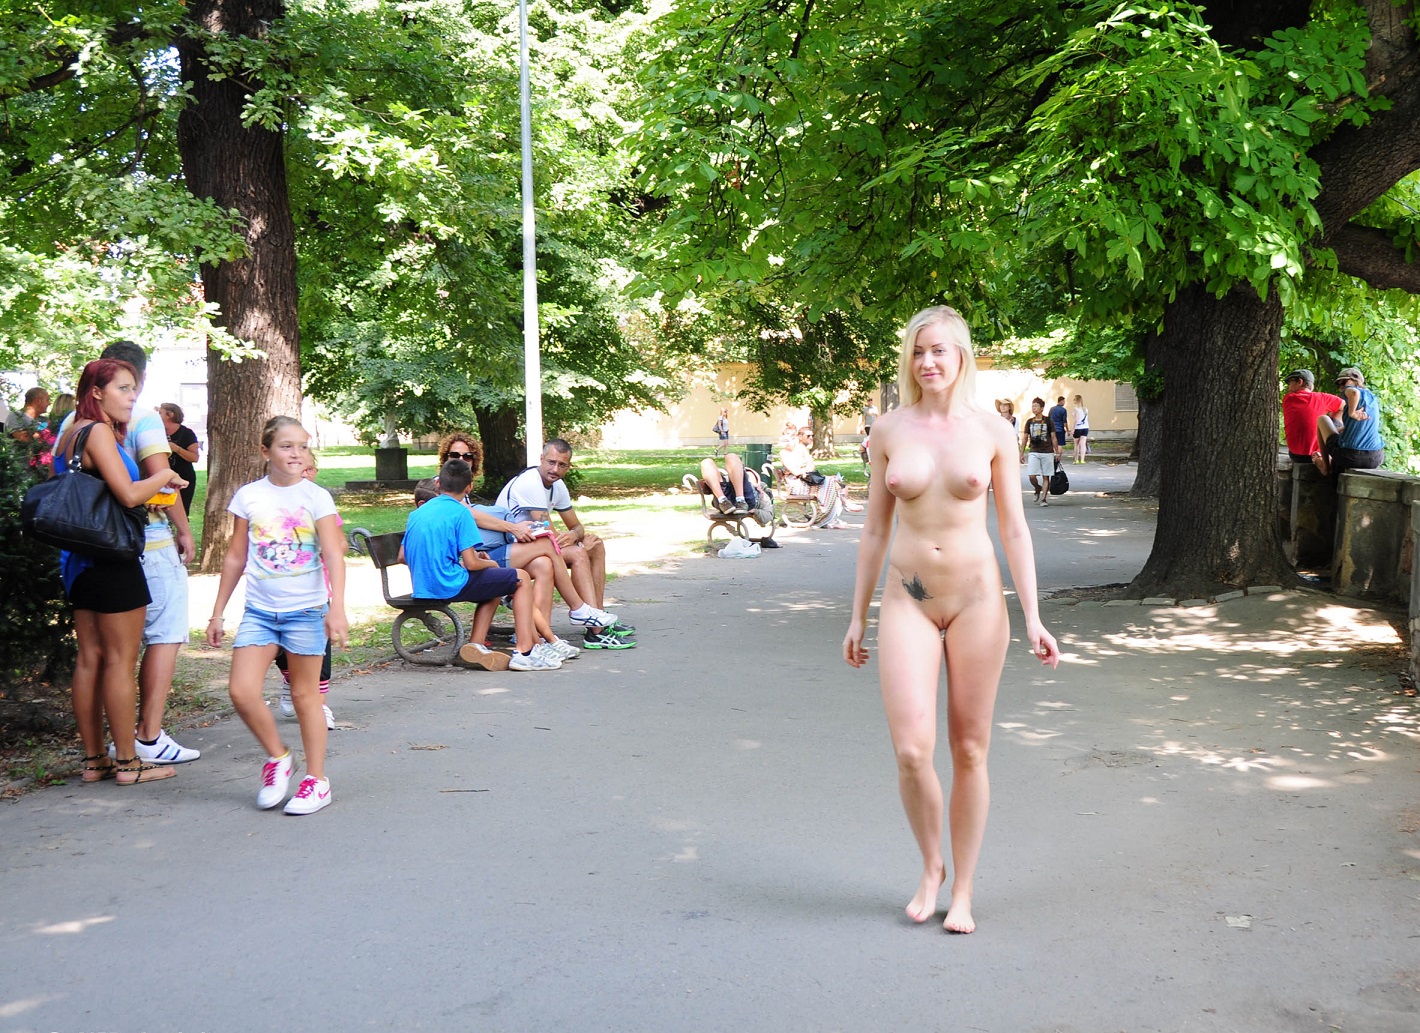 Bild 74841 von Schambereich in Kategorie Public Nude